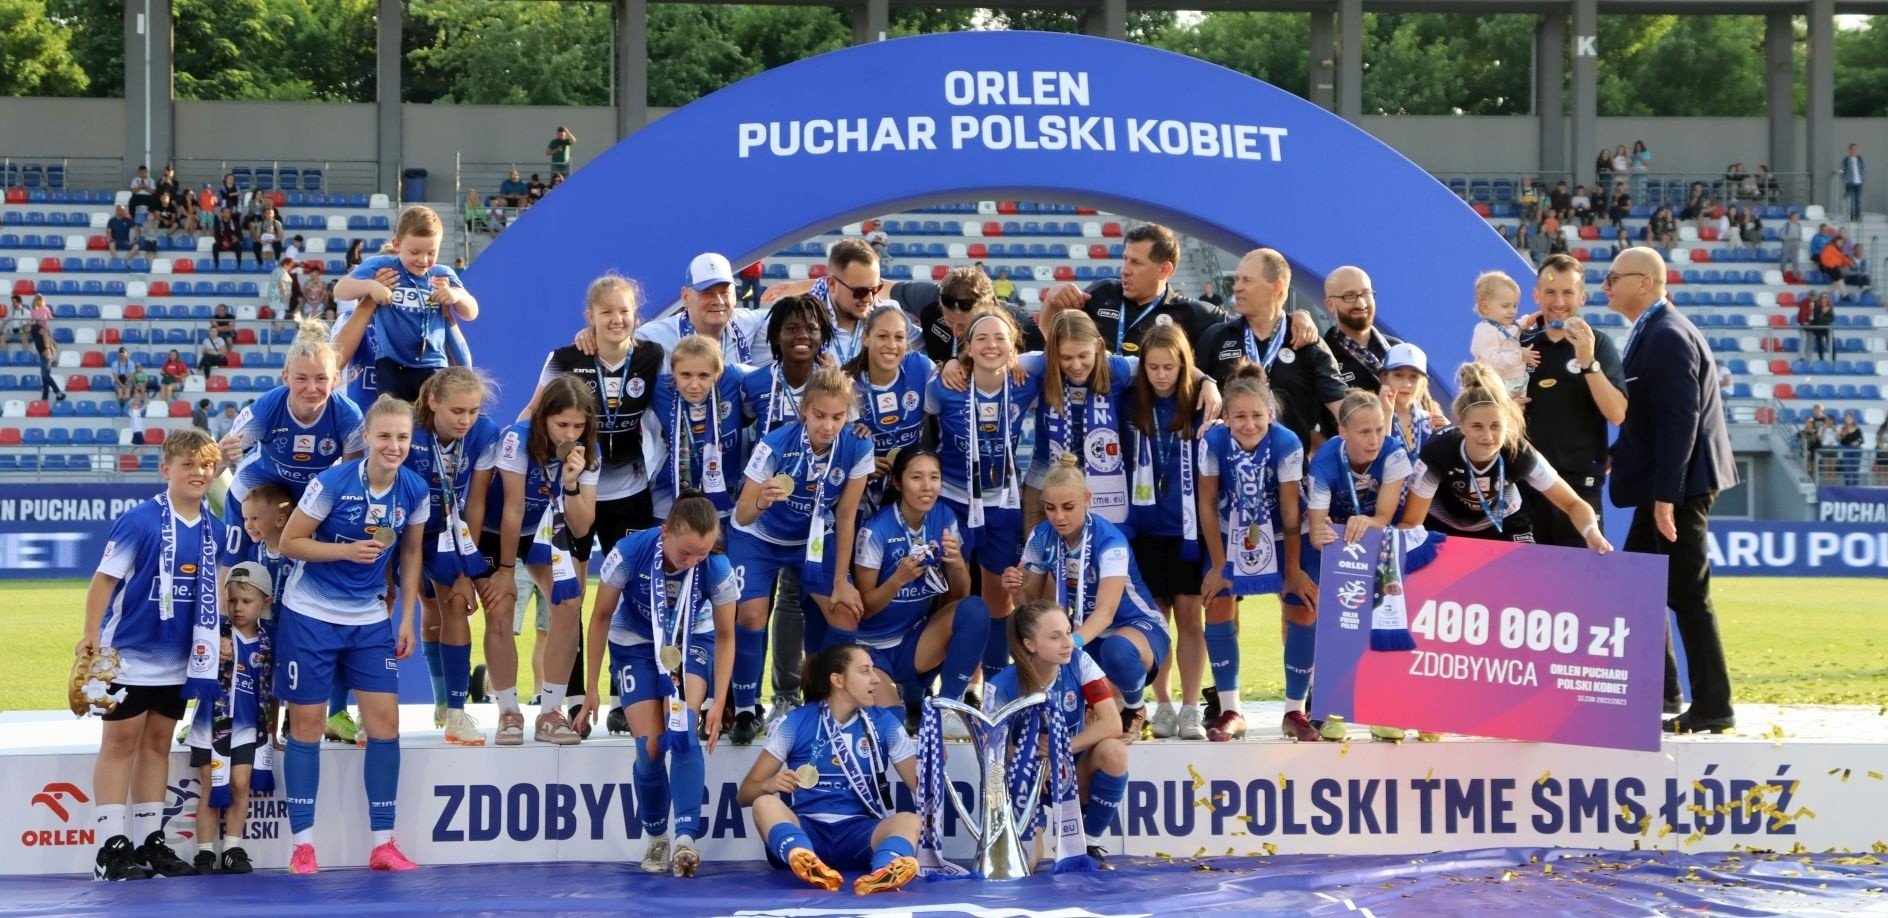 Finał Orlen Pucharu Polski Kobiet w piłce nożnej kobiet w Radomiu. Trofeum  dla TME SMS Łódź. Zobacz zdjęcia | Echo Dnia Radomskie